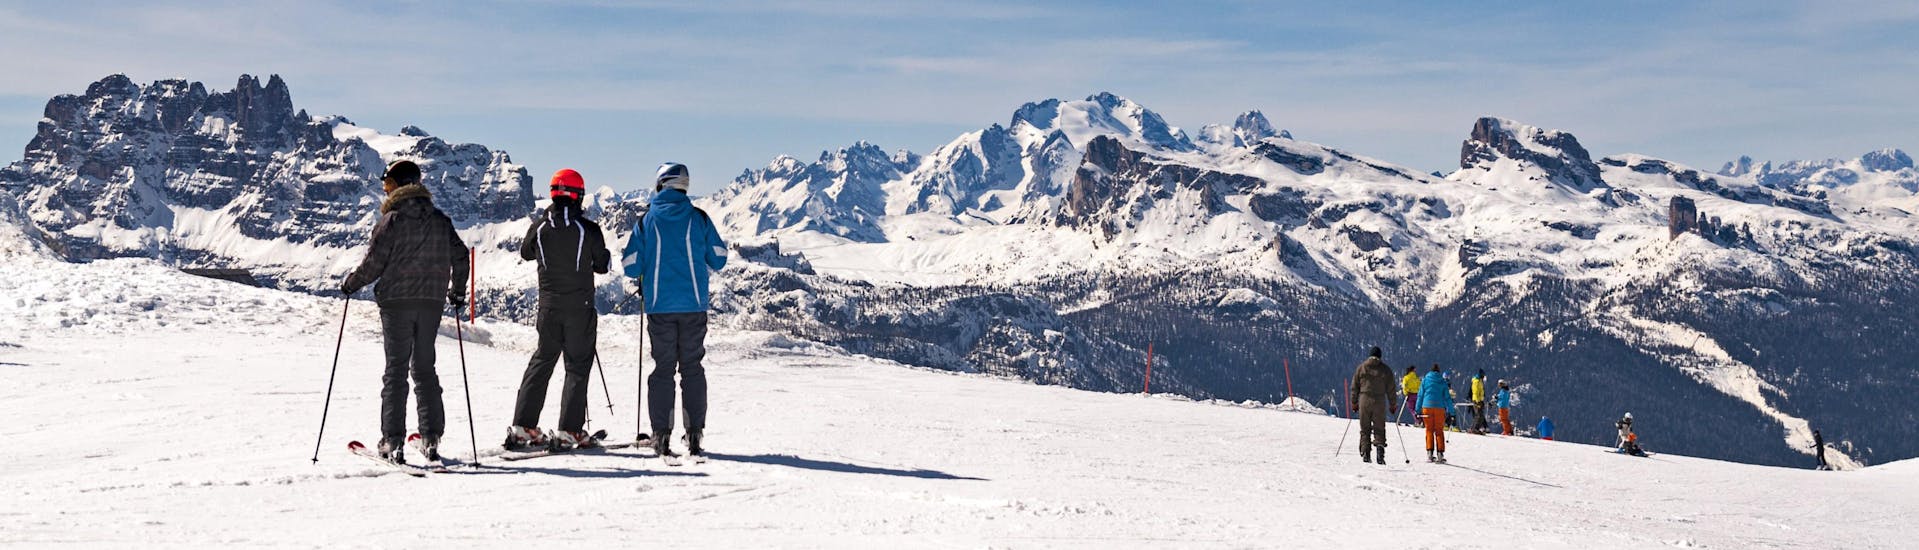 Vista panoramica delle Dolomiti con sciatori che partecipano a lezioni di sci dalle scuole di sci dell'area sciistica Cortina d'Ampezzo.